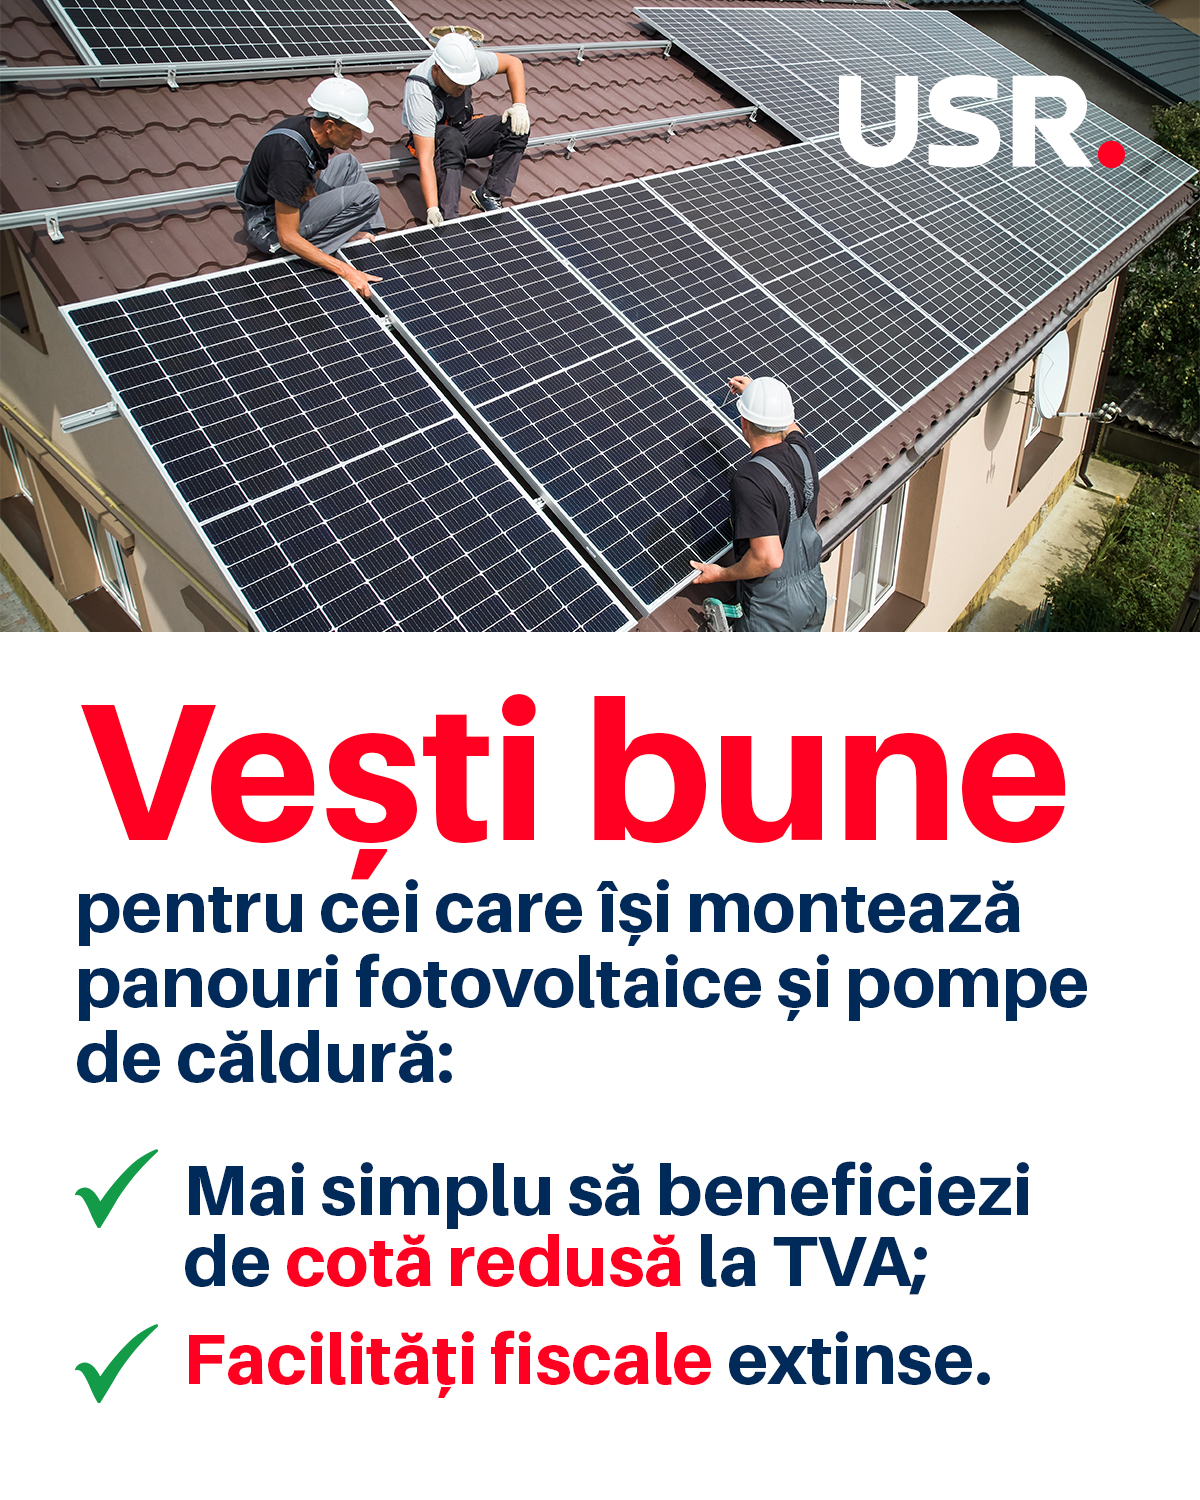 Vesti bune pentru cei care isi monteaza panouri fotovoltaice usrmiroslava.ro